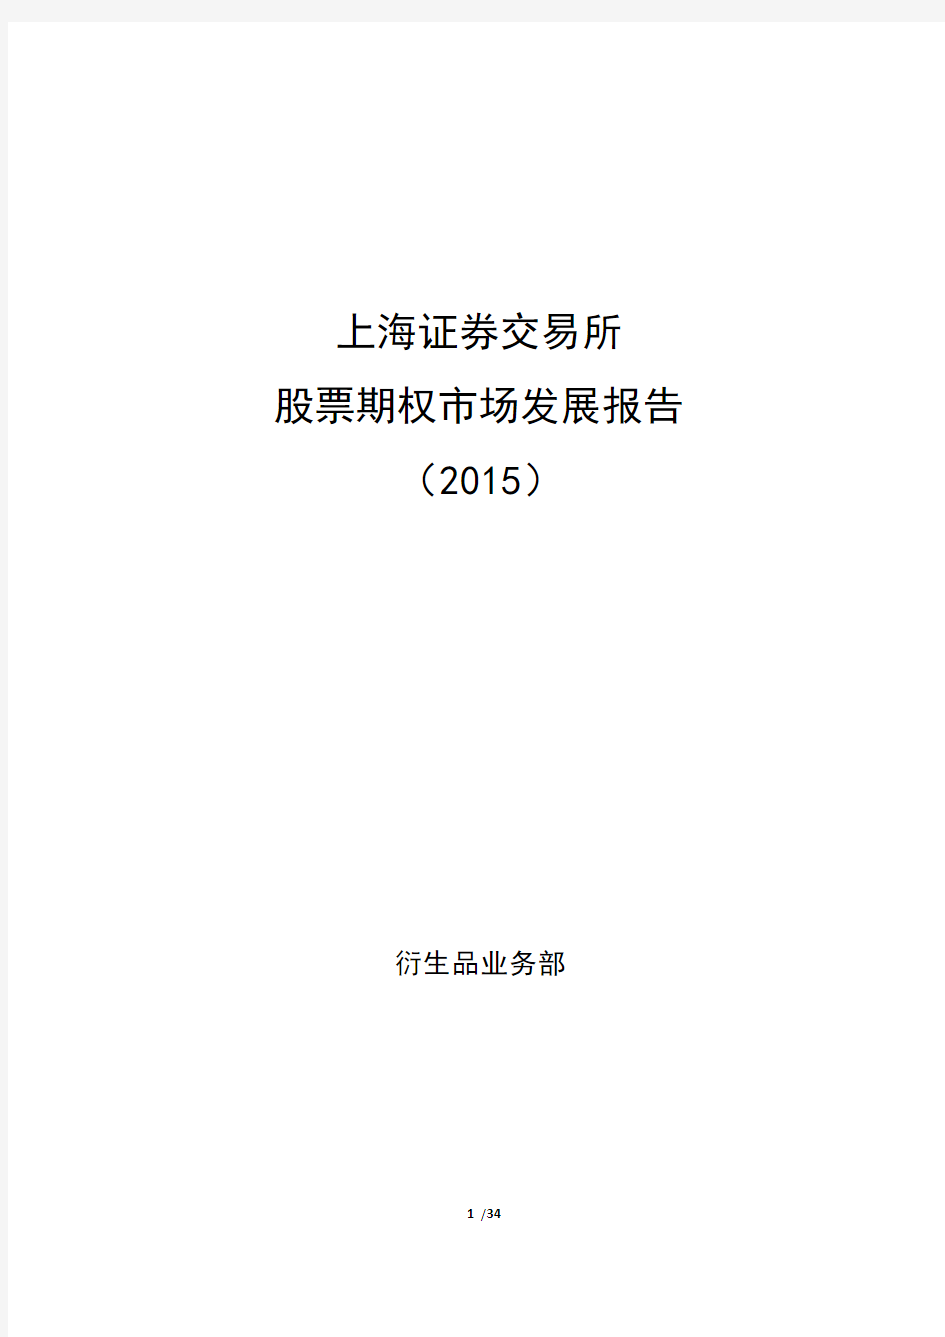 上海证券交易所股票期权市场发展报告(2015)